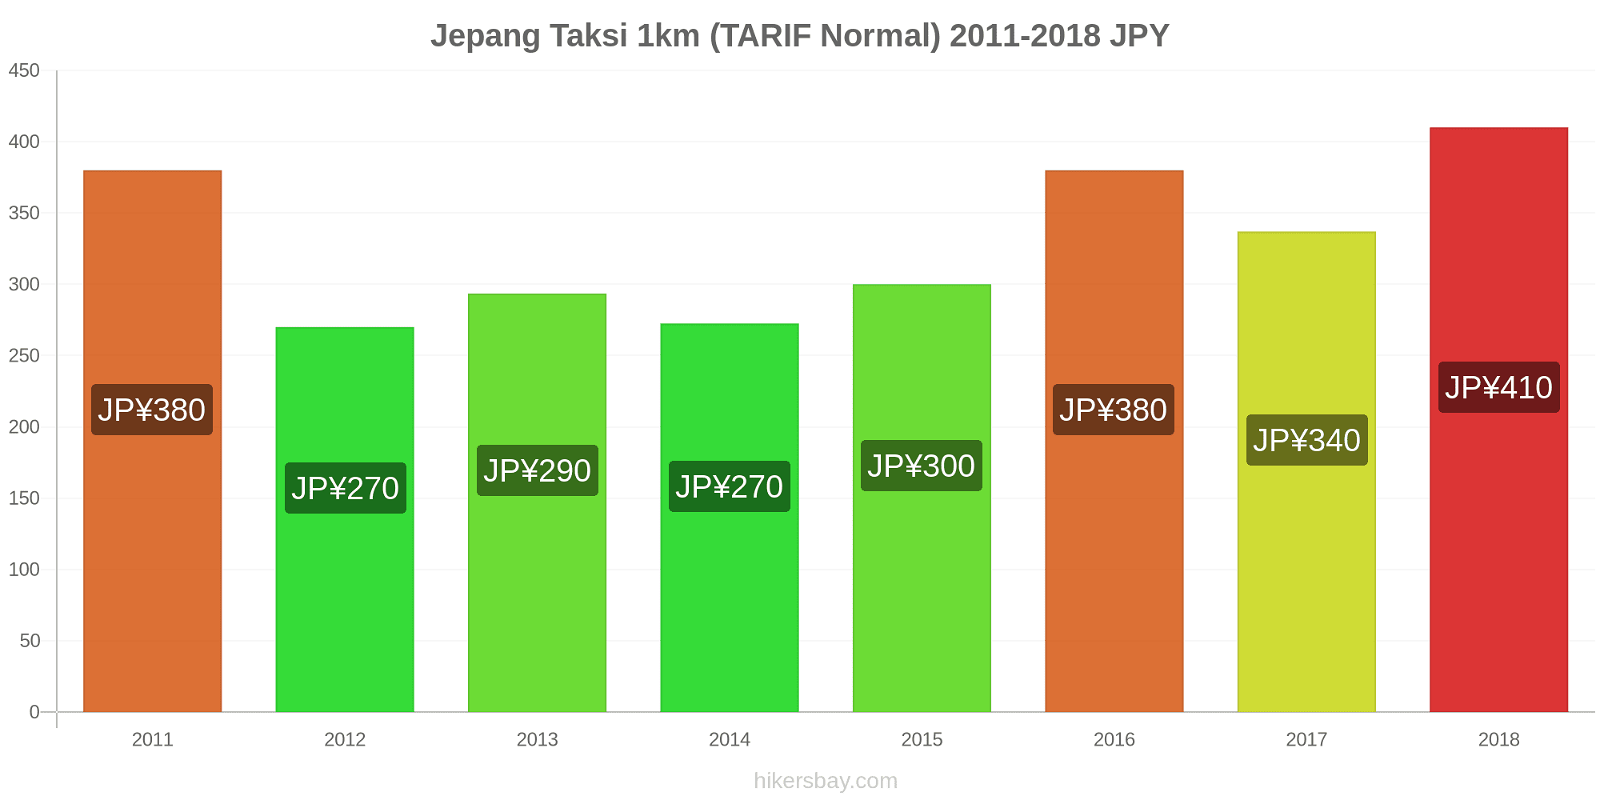 Jepang perubahan harga Taksi 1km (Tarif Normal) hikersbay.com